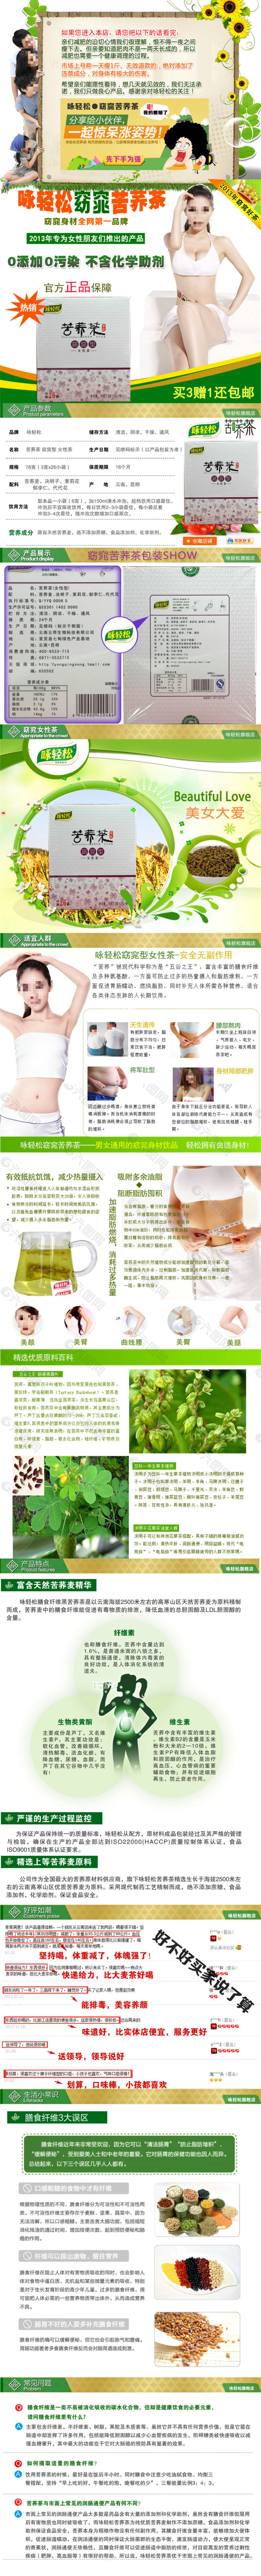 花茶淘宝电商食品茶饮详情页